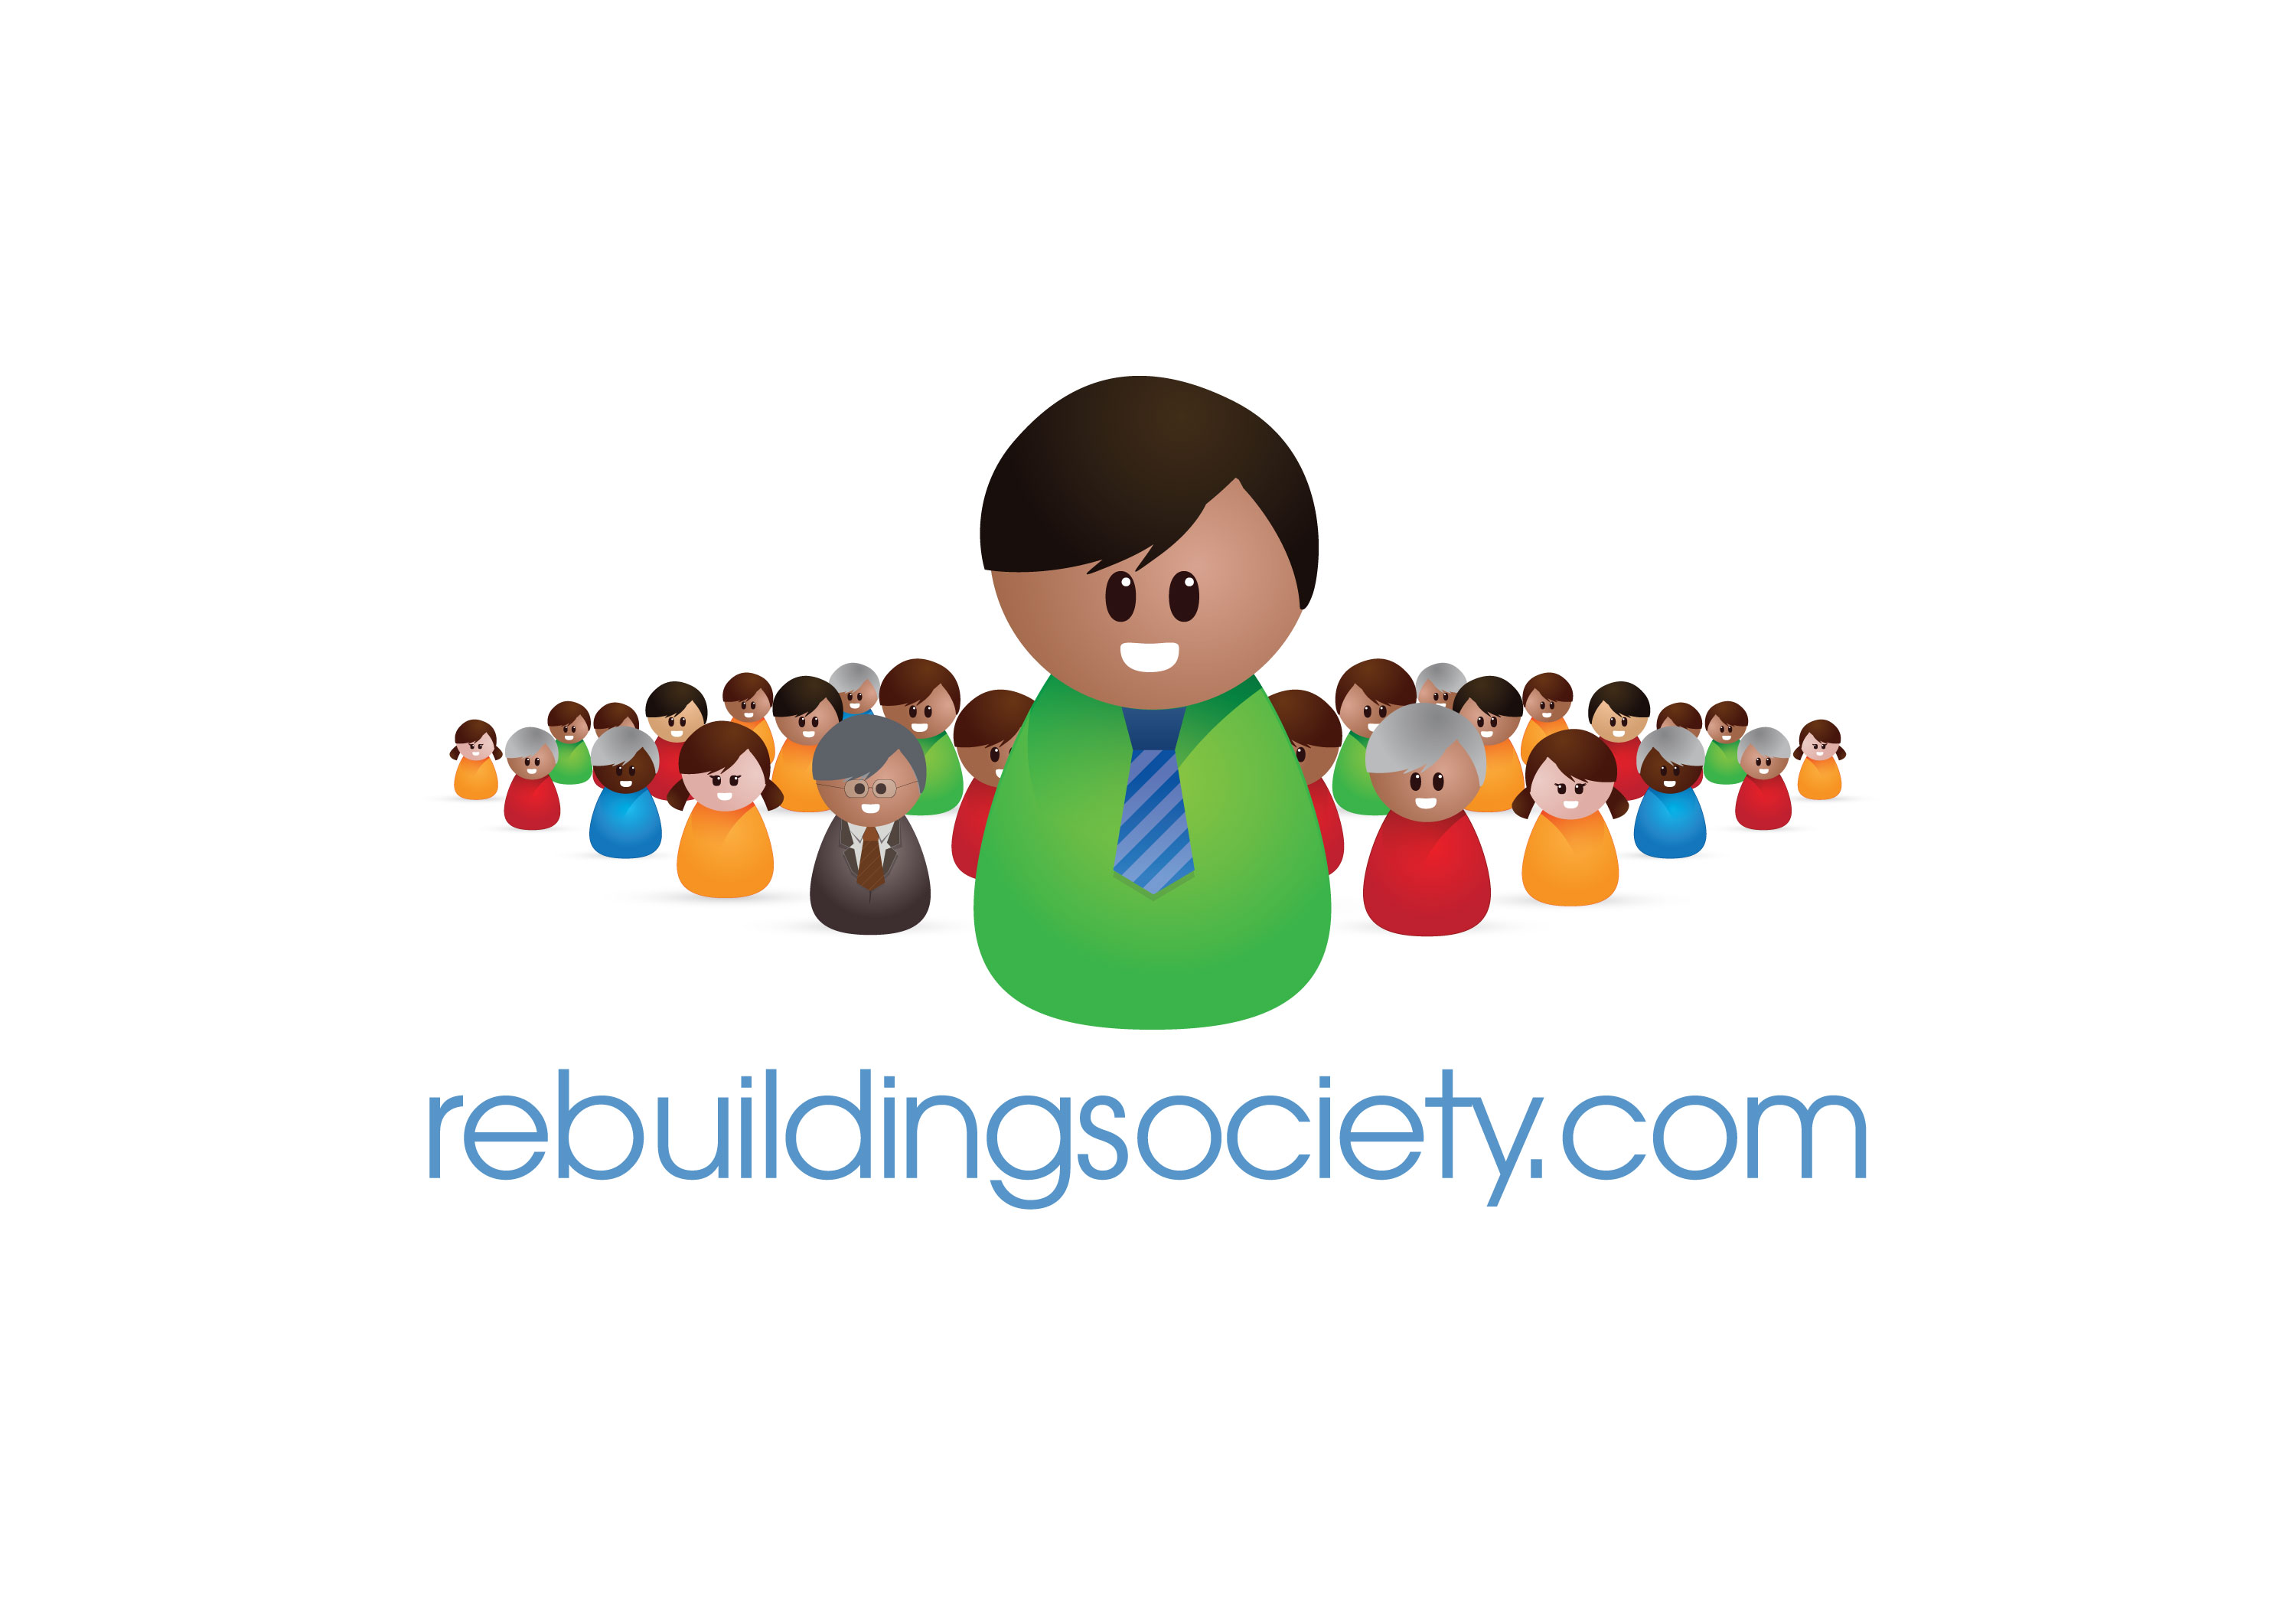 Rebuilding-society-logo